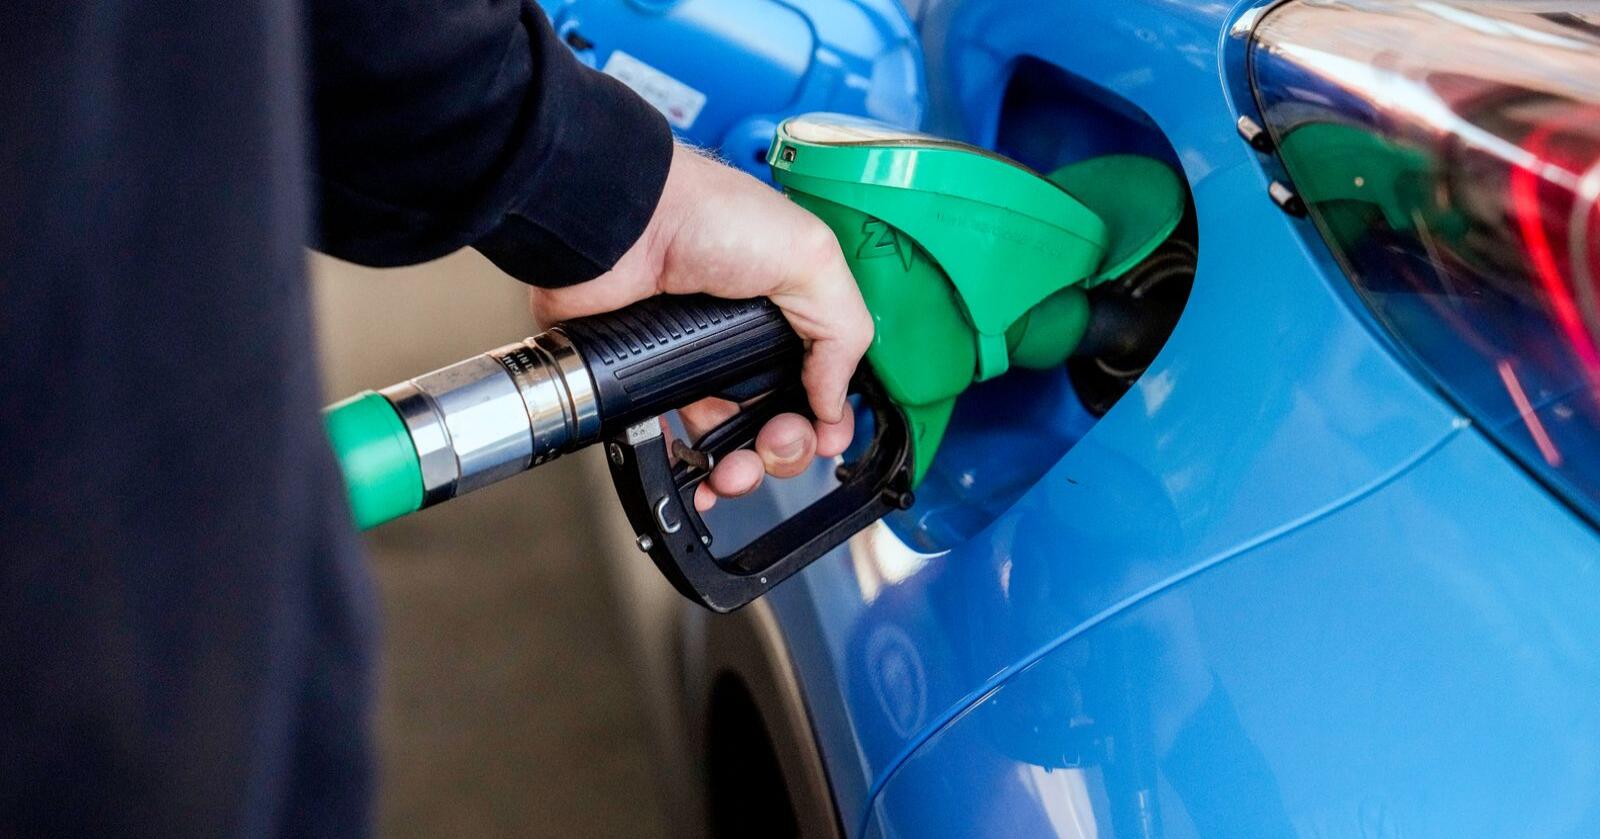 Sverige kan få muligheten til å midlertidig fjerne skatt på bensin og diesel, ifølge nyhetsbyrået TT. Illustrasjonsfoto: Beate Oma Dahle / NTB